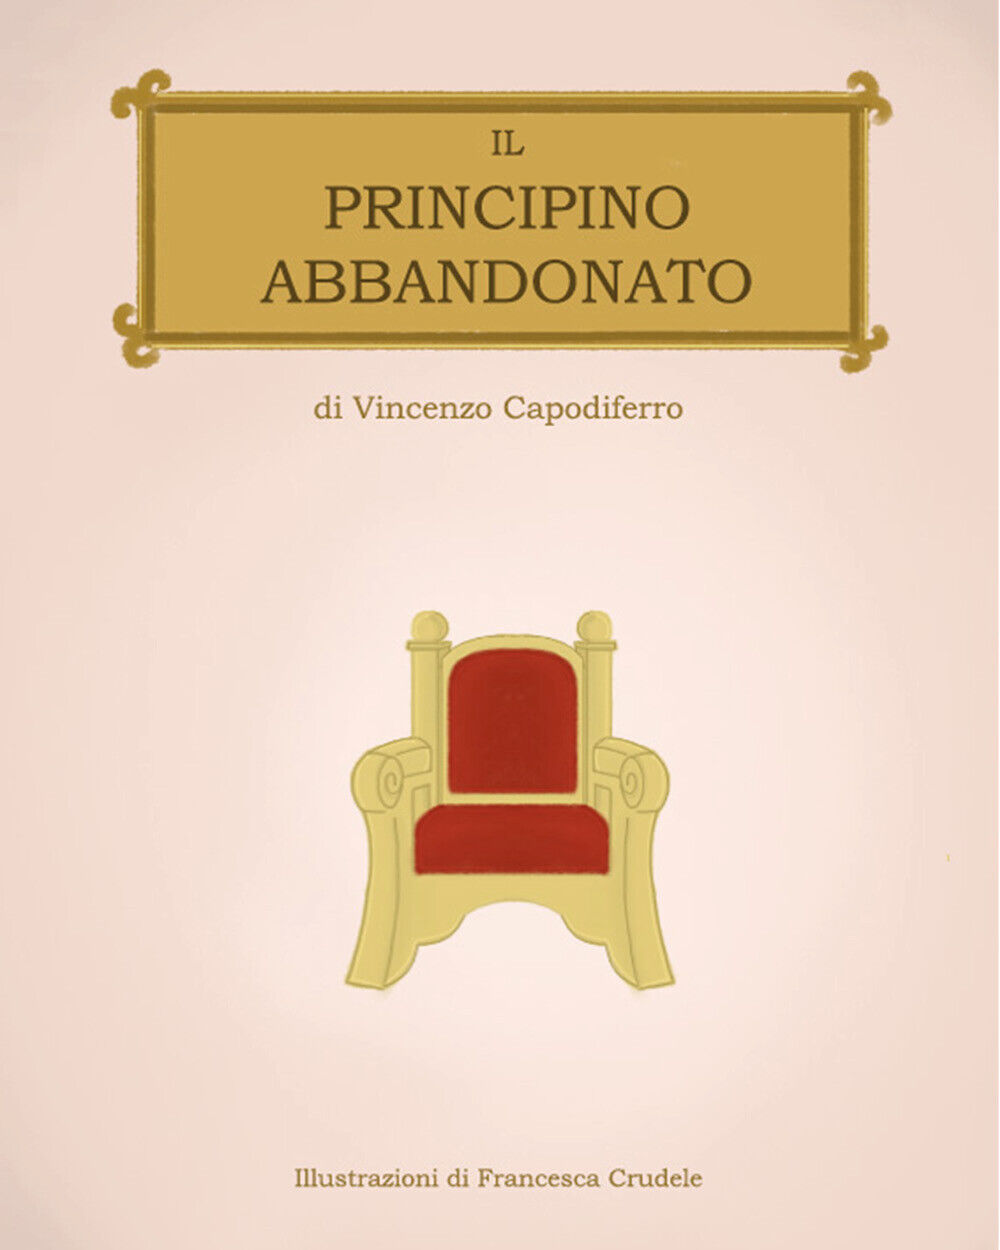   Il principino abbandonato - Vincenzo Capodiferro,  2020,  Youcanprint